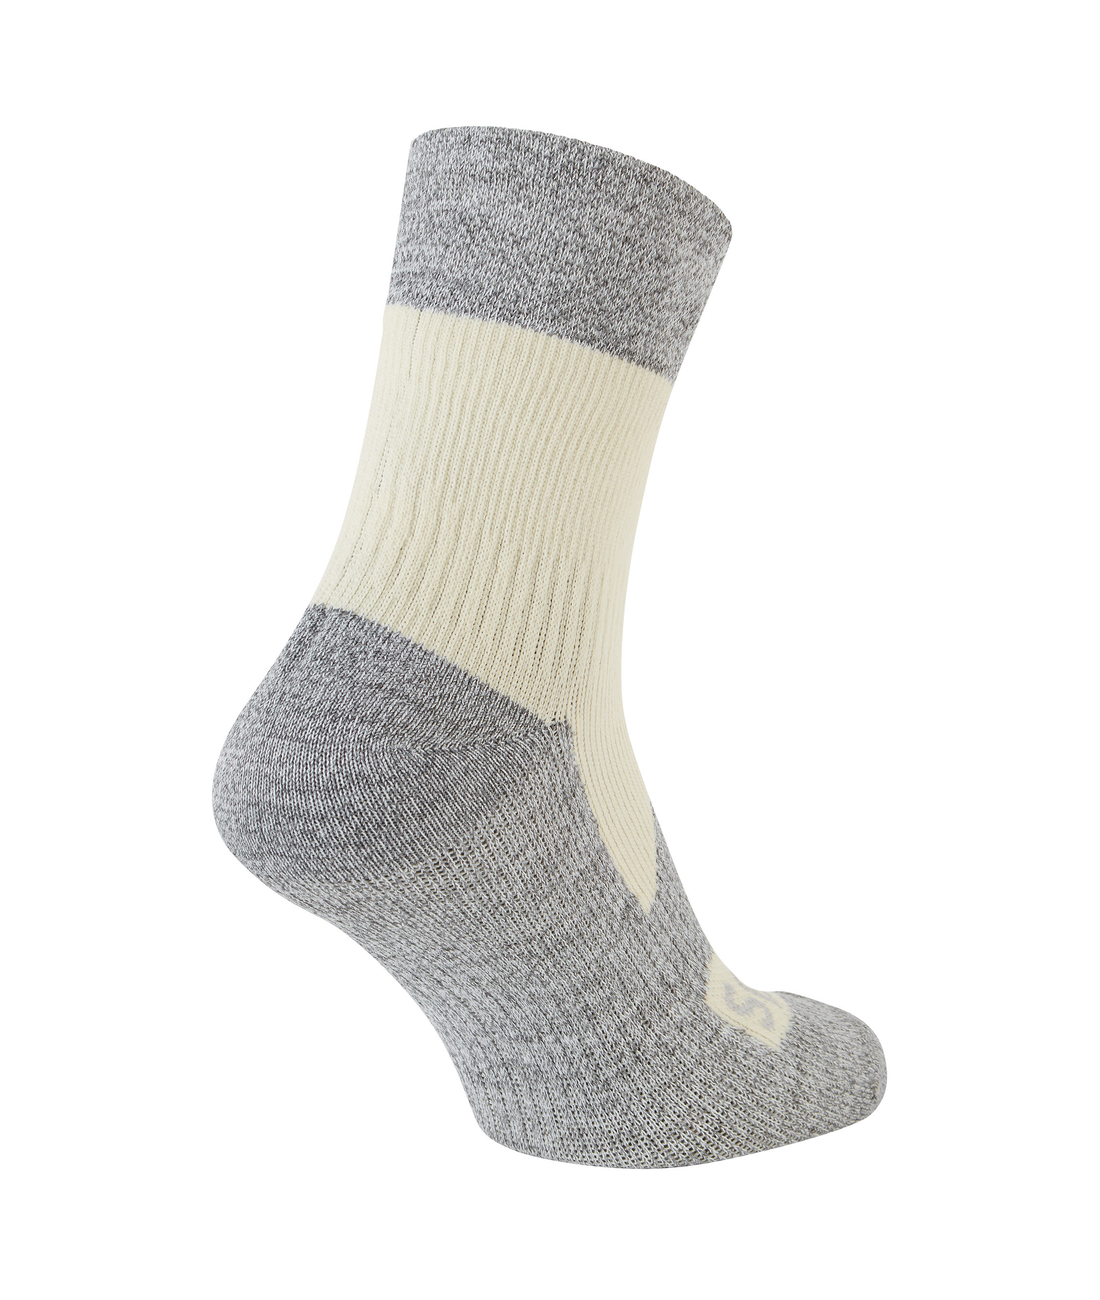 Bircham - Waterproof All Weather Ankle Length Sock Damenmodell